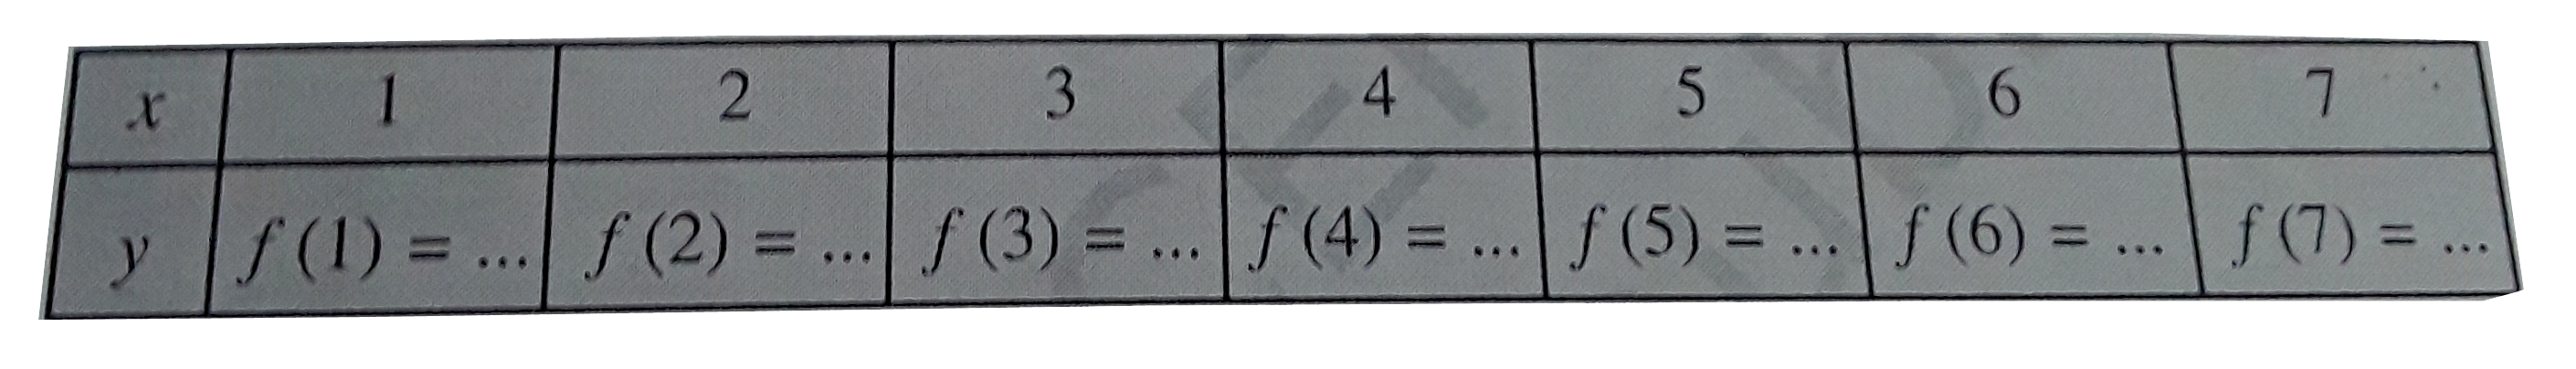 मान लीजिए कि  N वास्तविक संख्याओं का समुच्चय हैं।f : N to N, f(x) =2x +1 , द्वारा  परिभषित एक वास्तविक मान फलन हैं। इस परिभाषा का प्रयोग  करके नीचे दी गई को पूर्ण कीजिए।